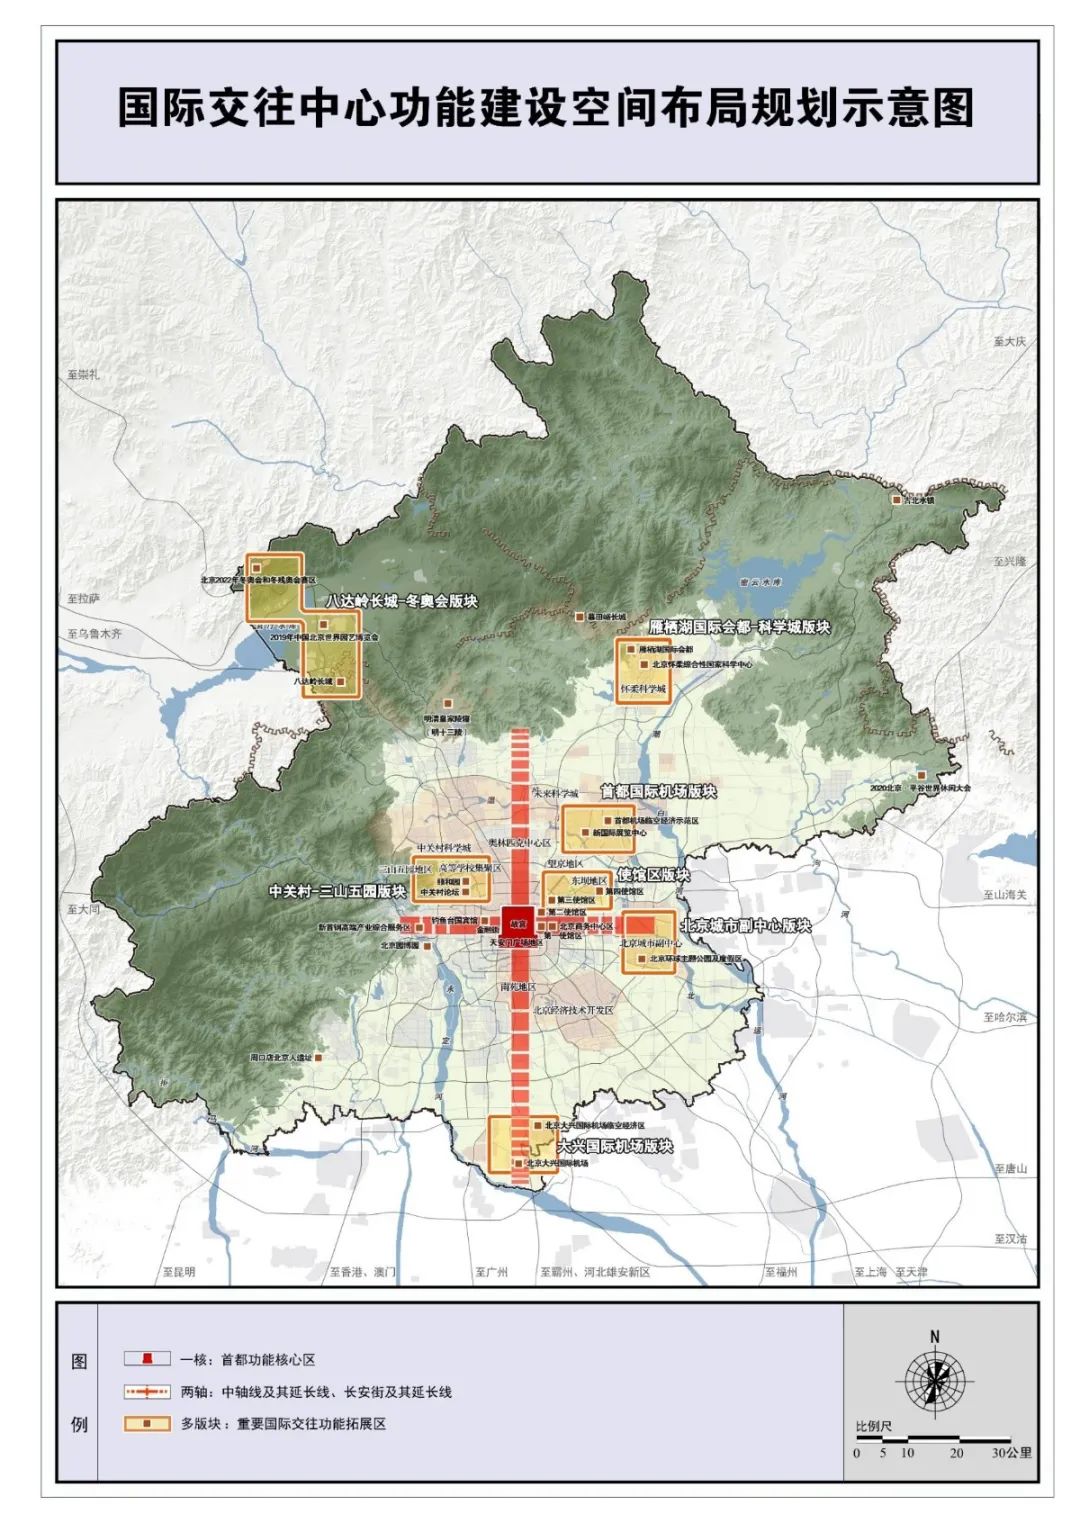 北京国际交往中心功能建设规划图